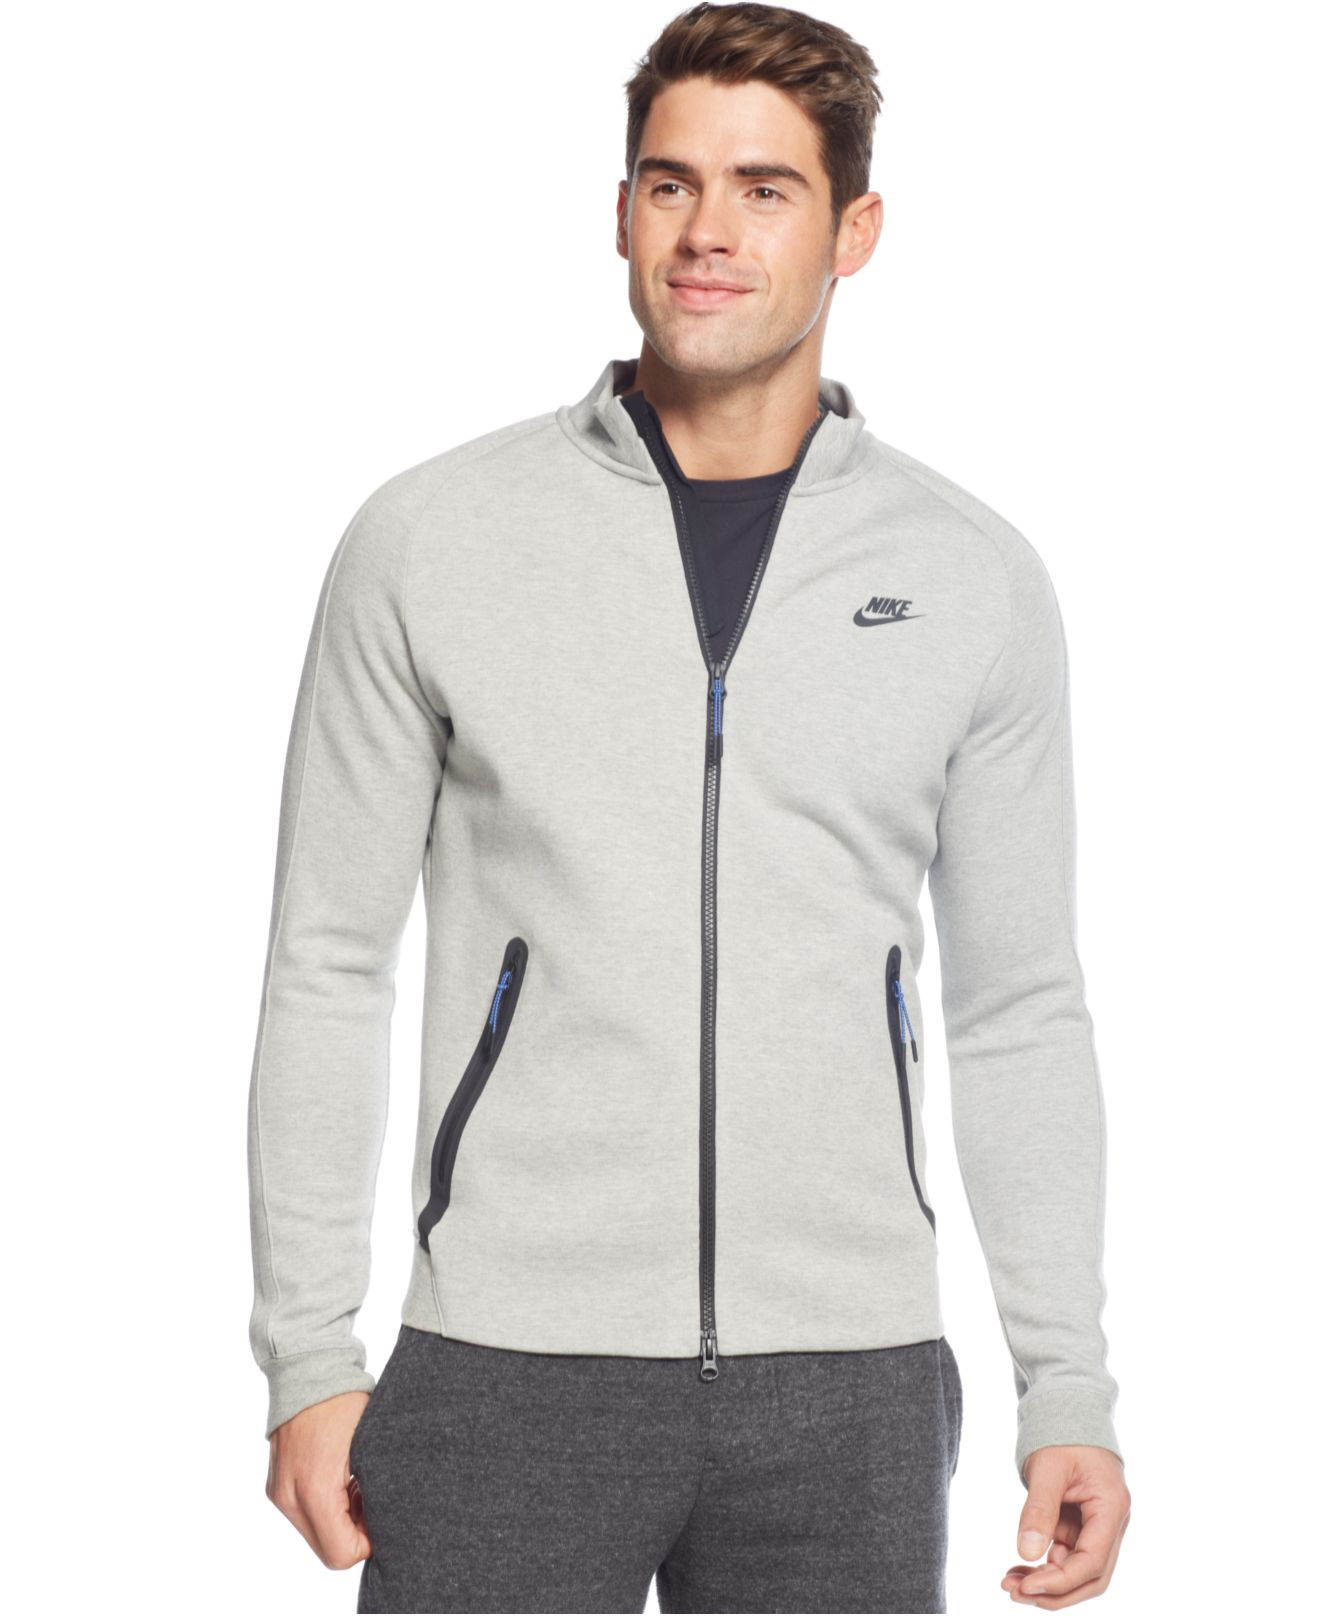 Nike Tech N98 Fleece Jacket in Grey Heather (Gray) for Men - Lyst